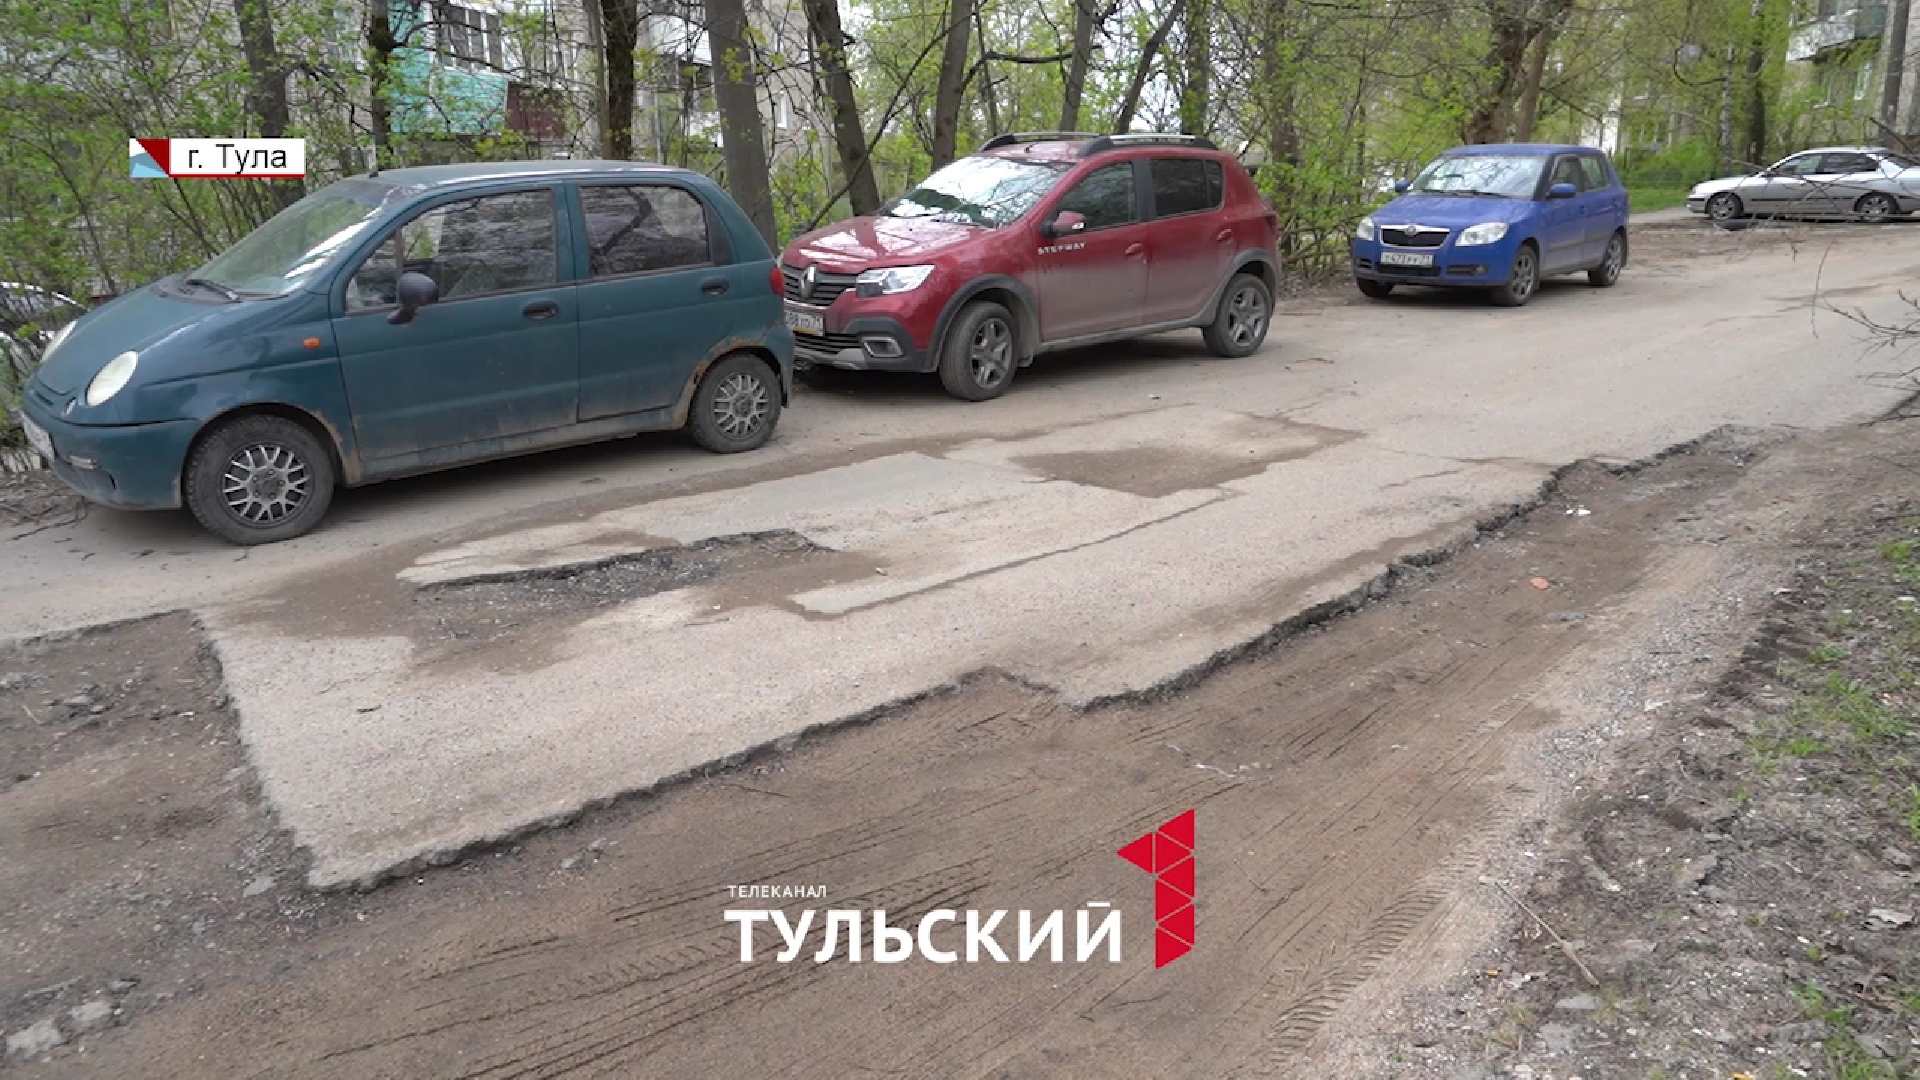 Дорога на улице Академика Павлова в Туле превратилась в полосу препятствий